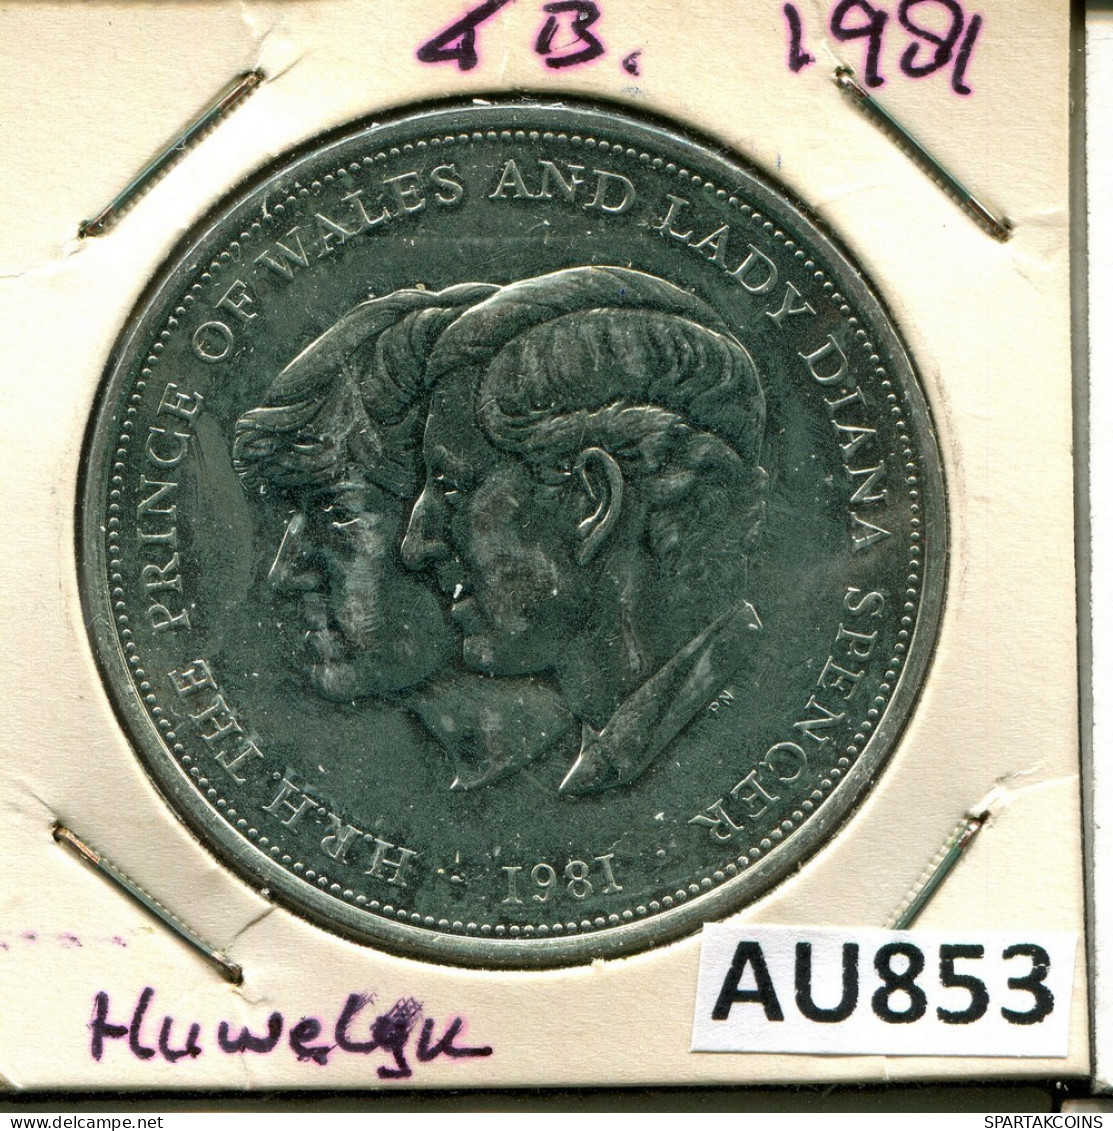 25 NEW PENCE 1981 UK GROßBRITANNIEN GREAT BRITAIN Münze #AU853.D.A - 25 New Pence